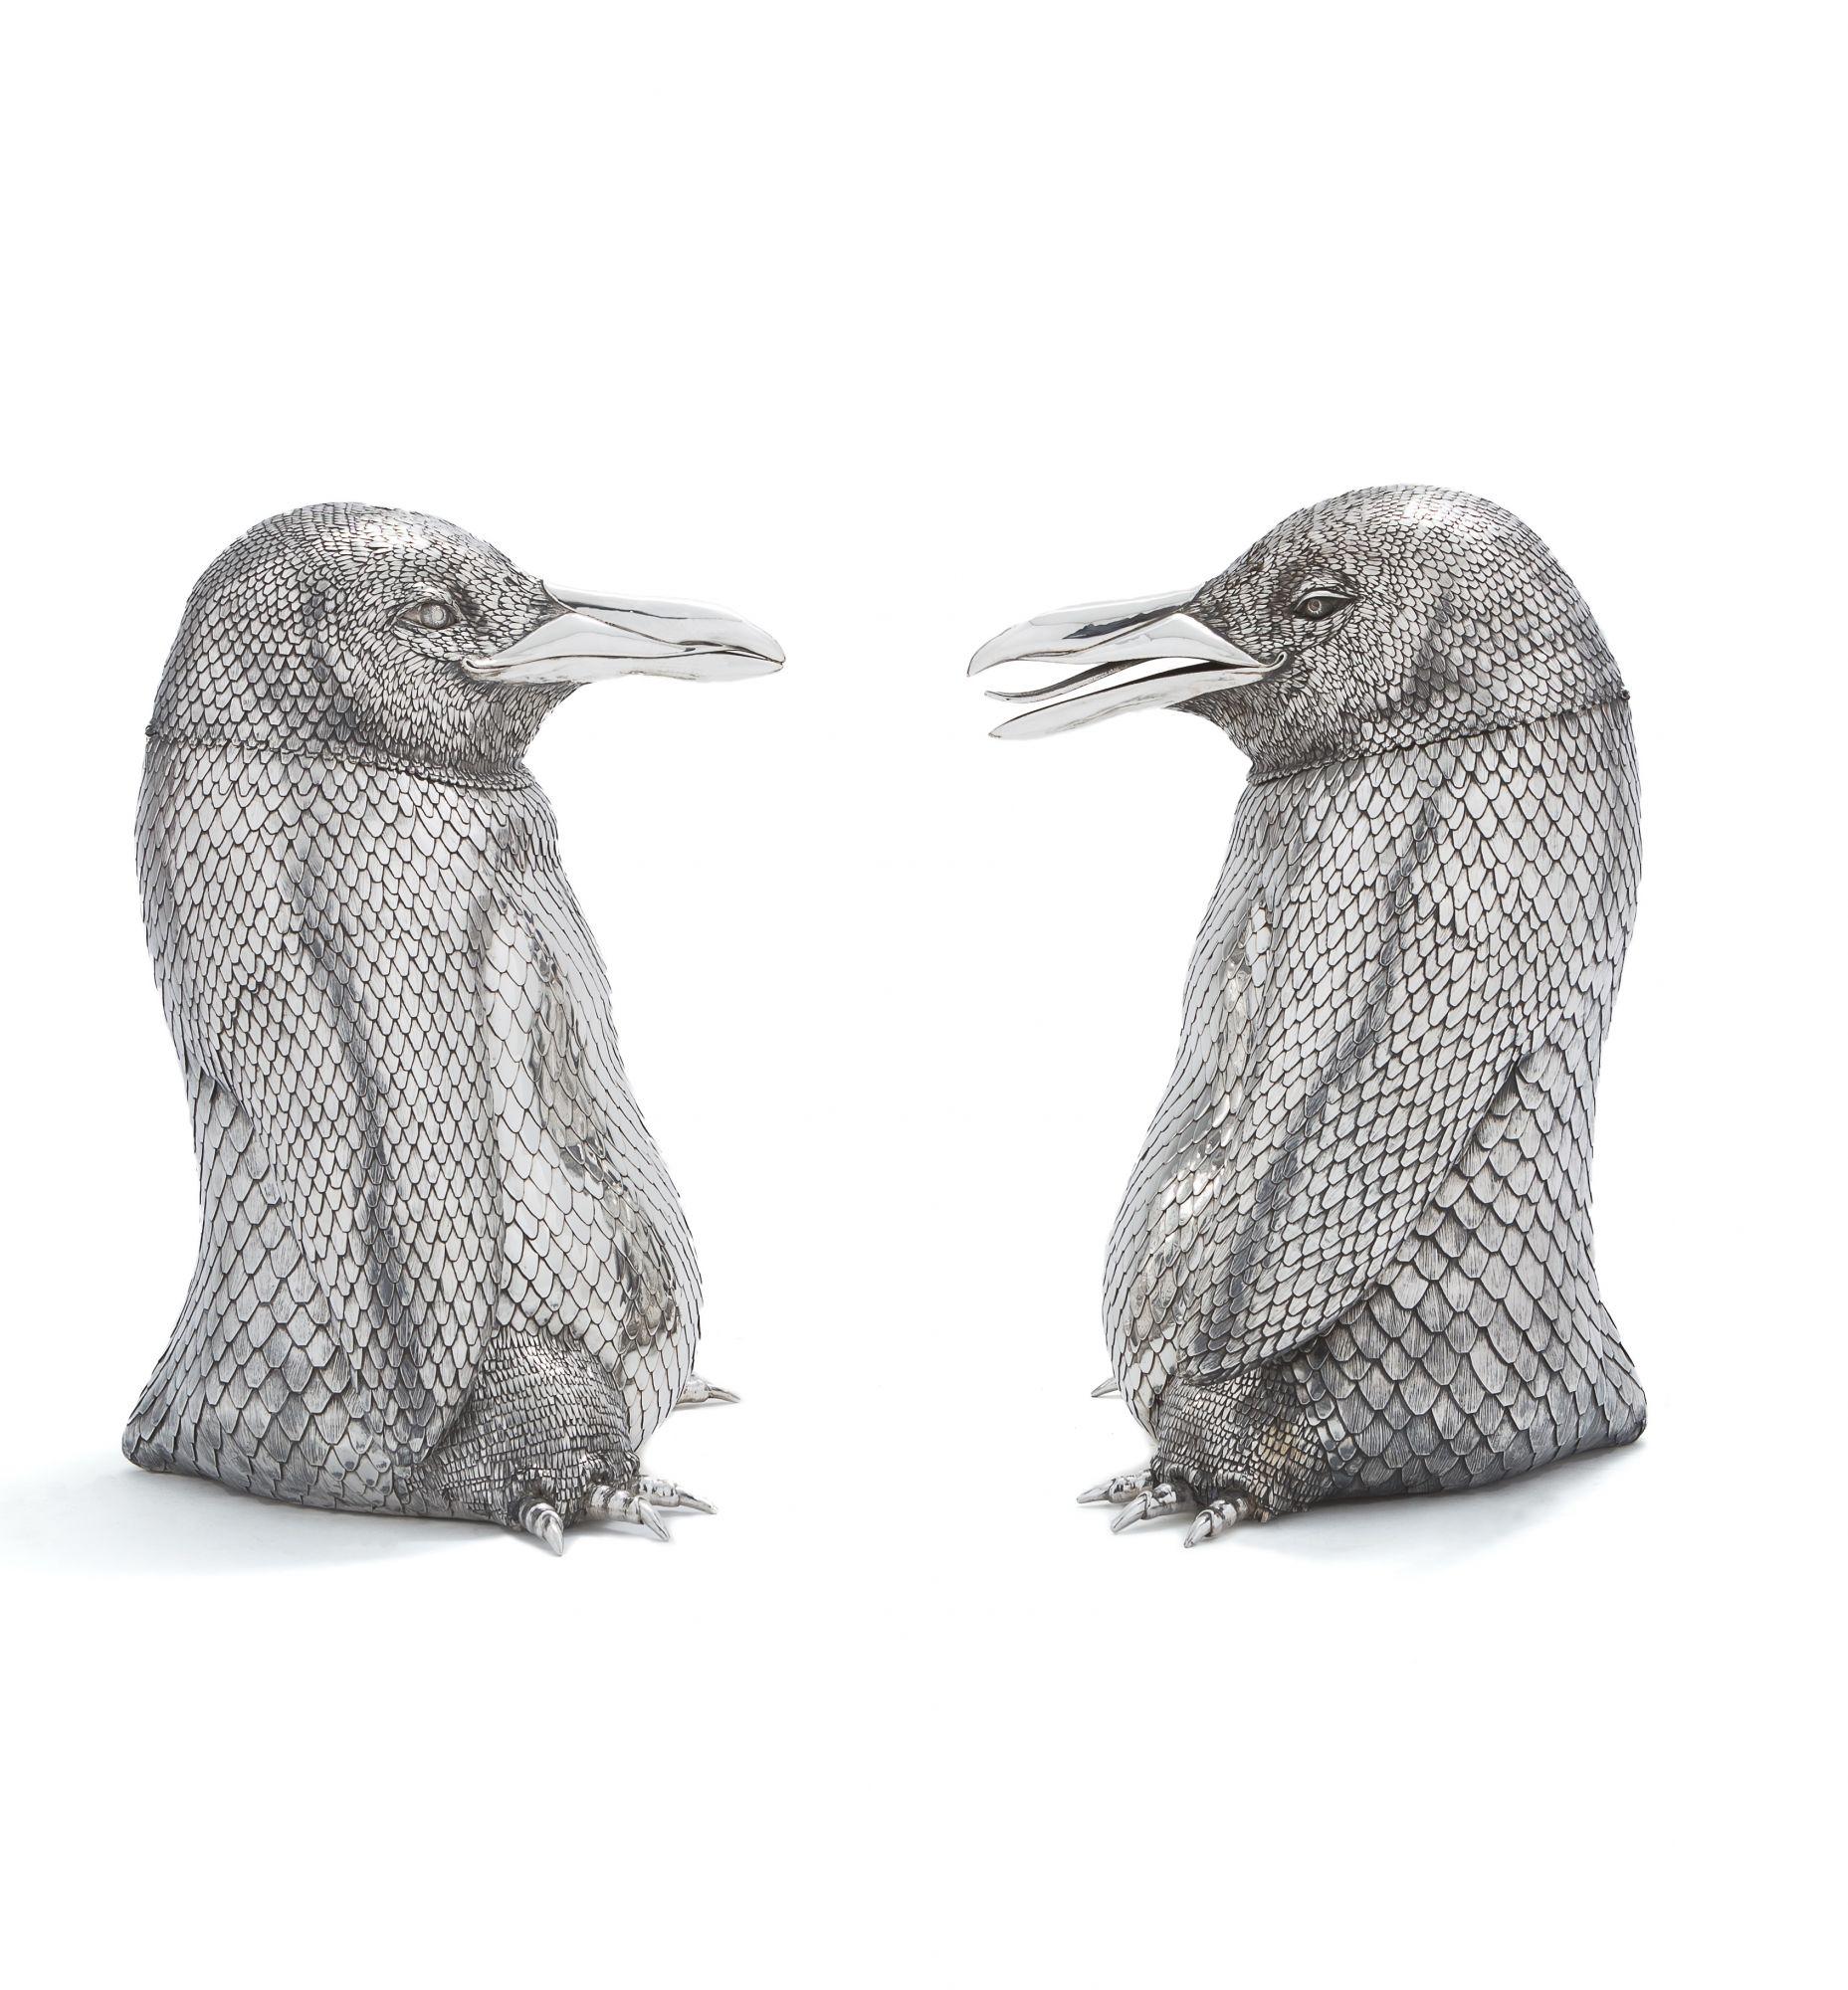 Appliqué Mario Buccellati pair of Italian Silver Penguin-Form Magnum Wine Coolers